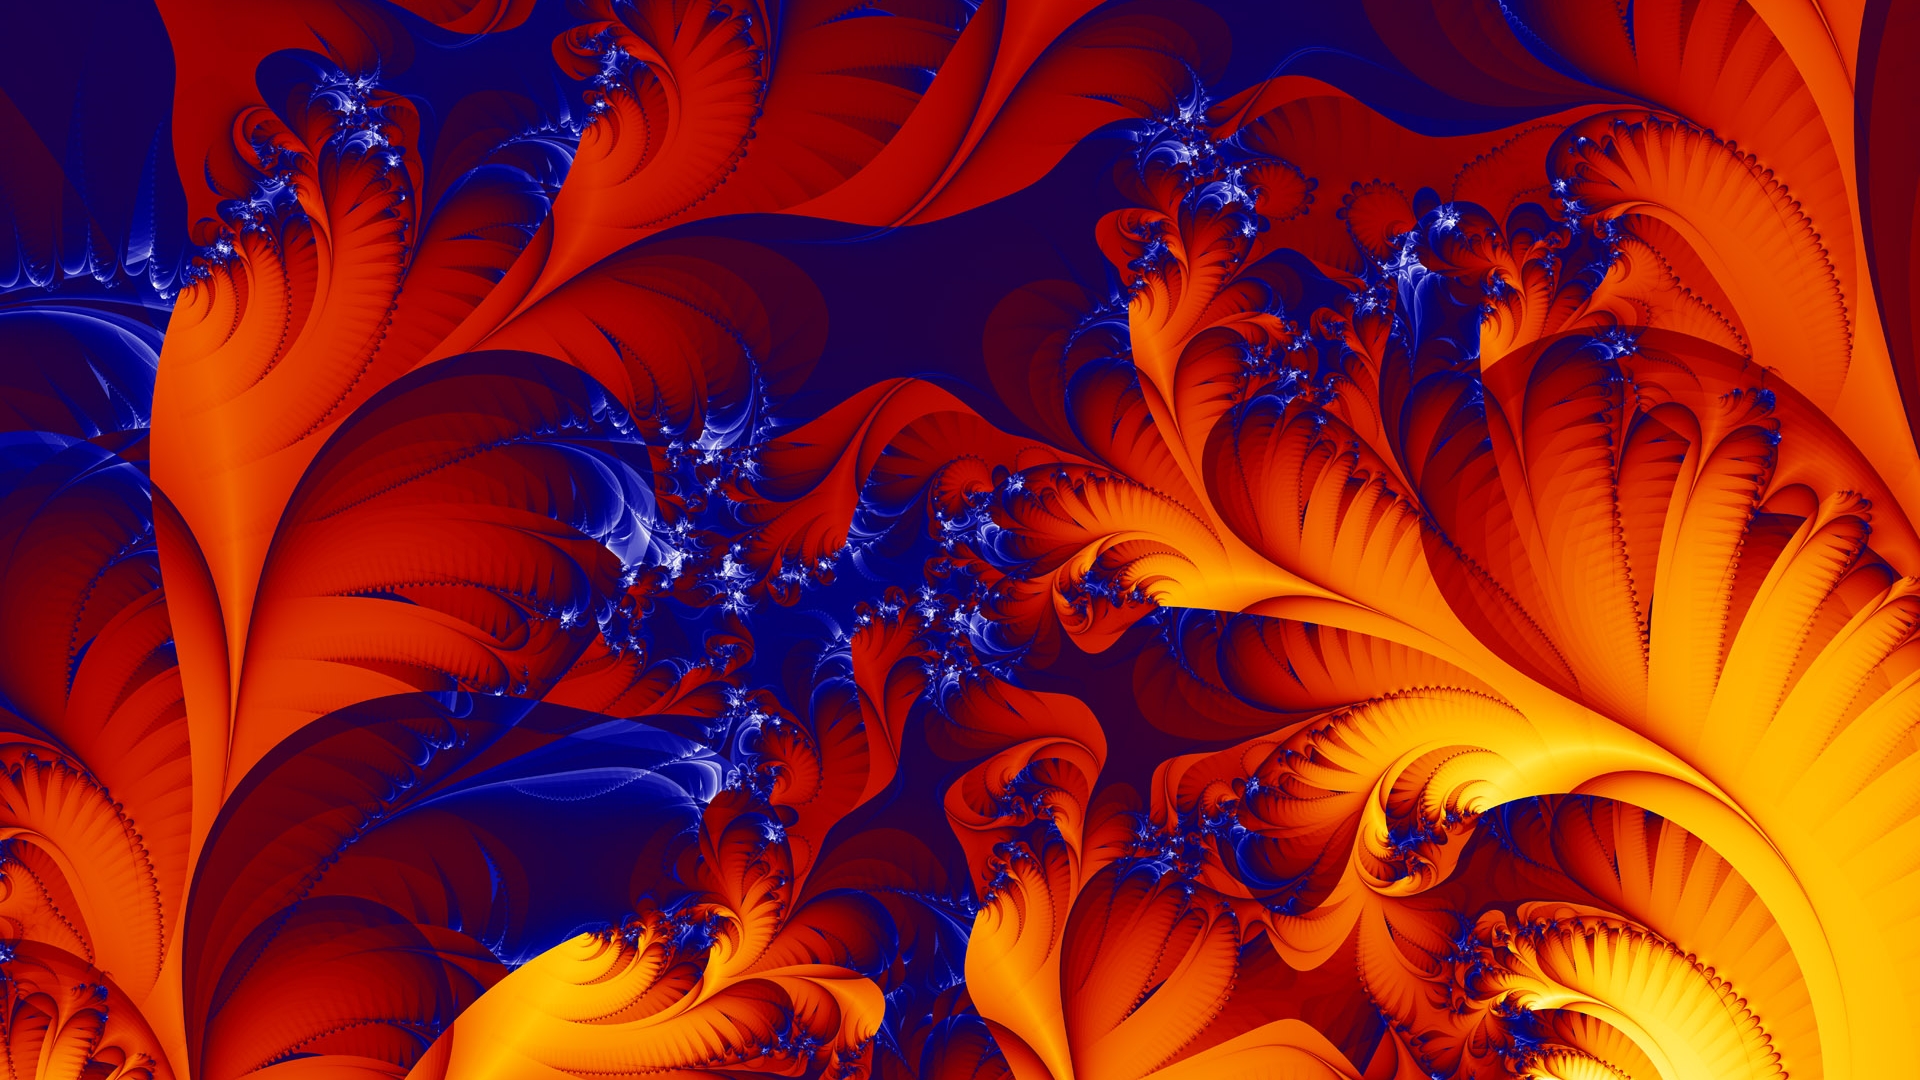 рисунок, абстракция, оранжевые листья, синий фон